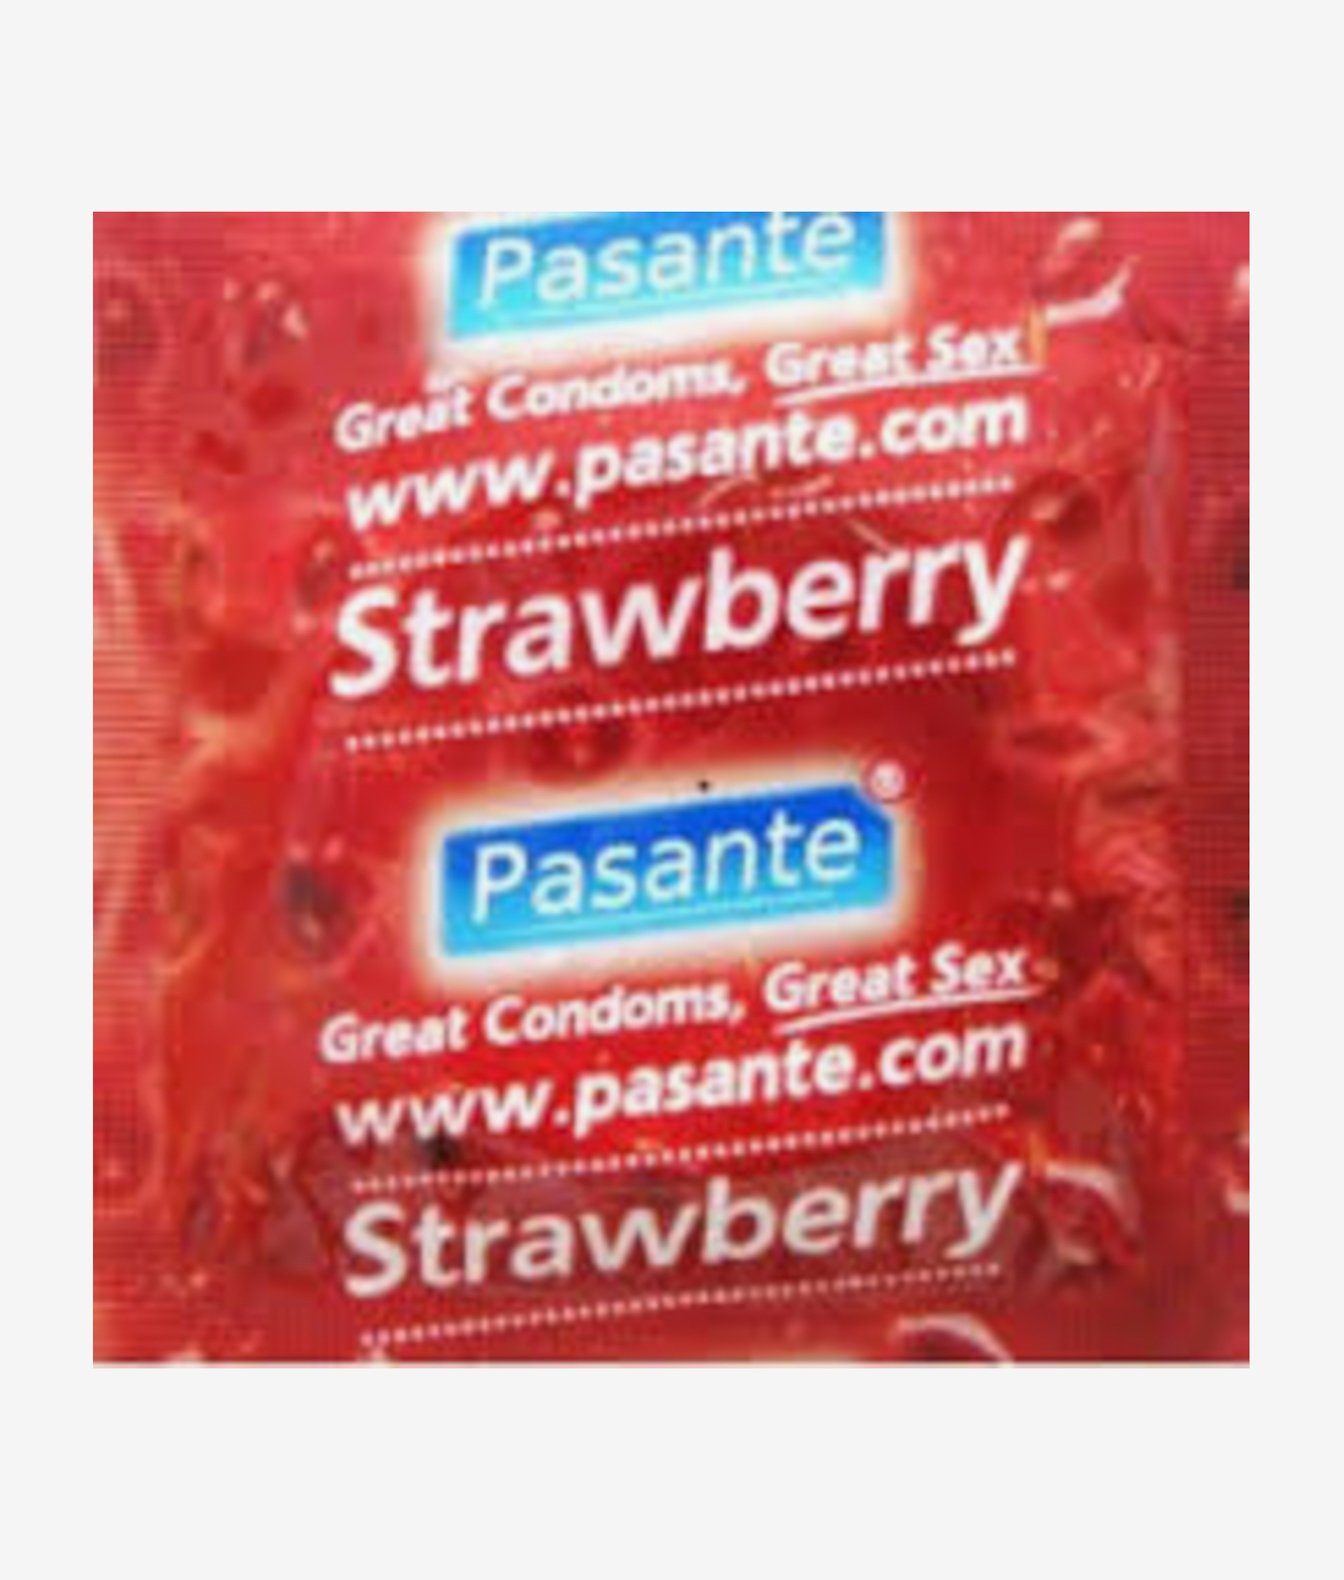 Pasante Strawberry prezerwatywy smakowe